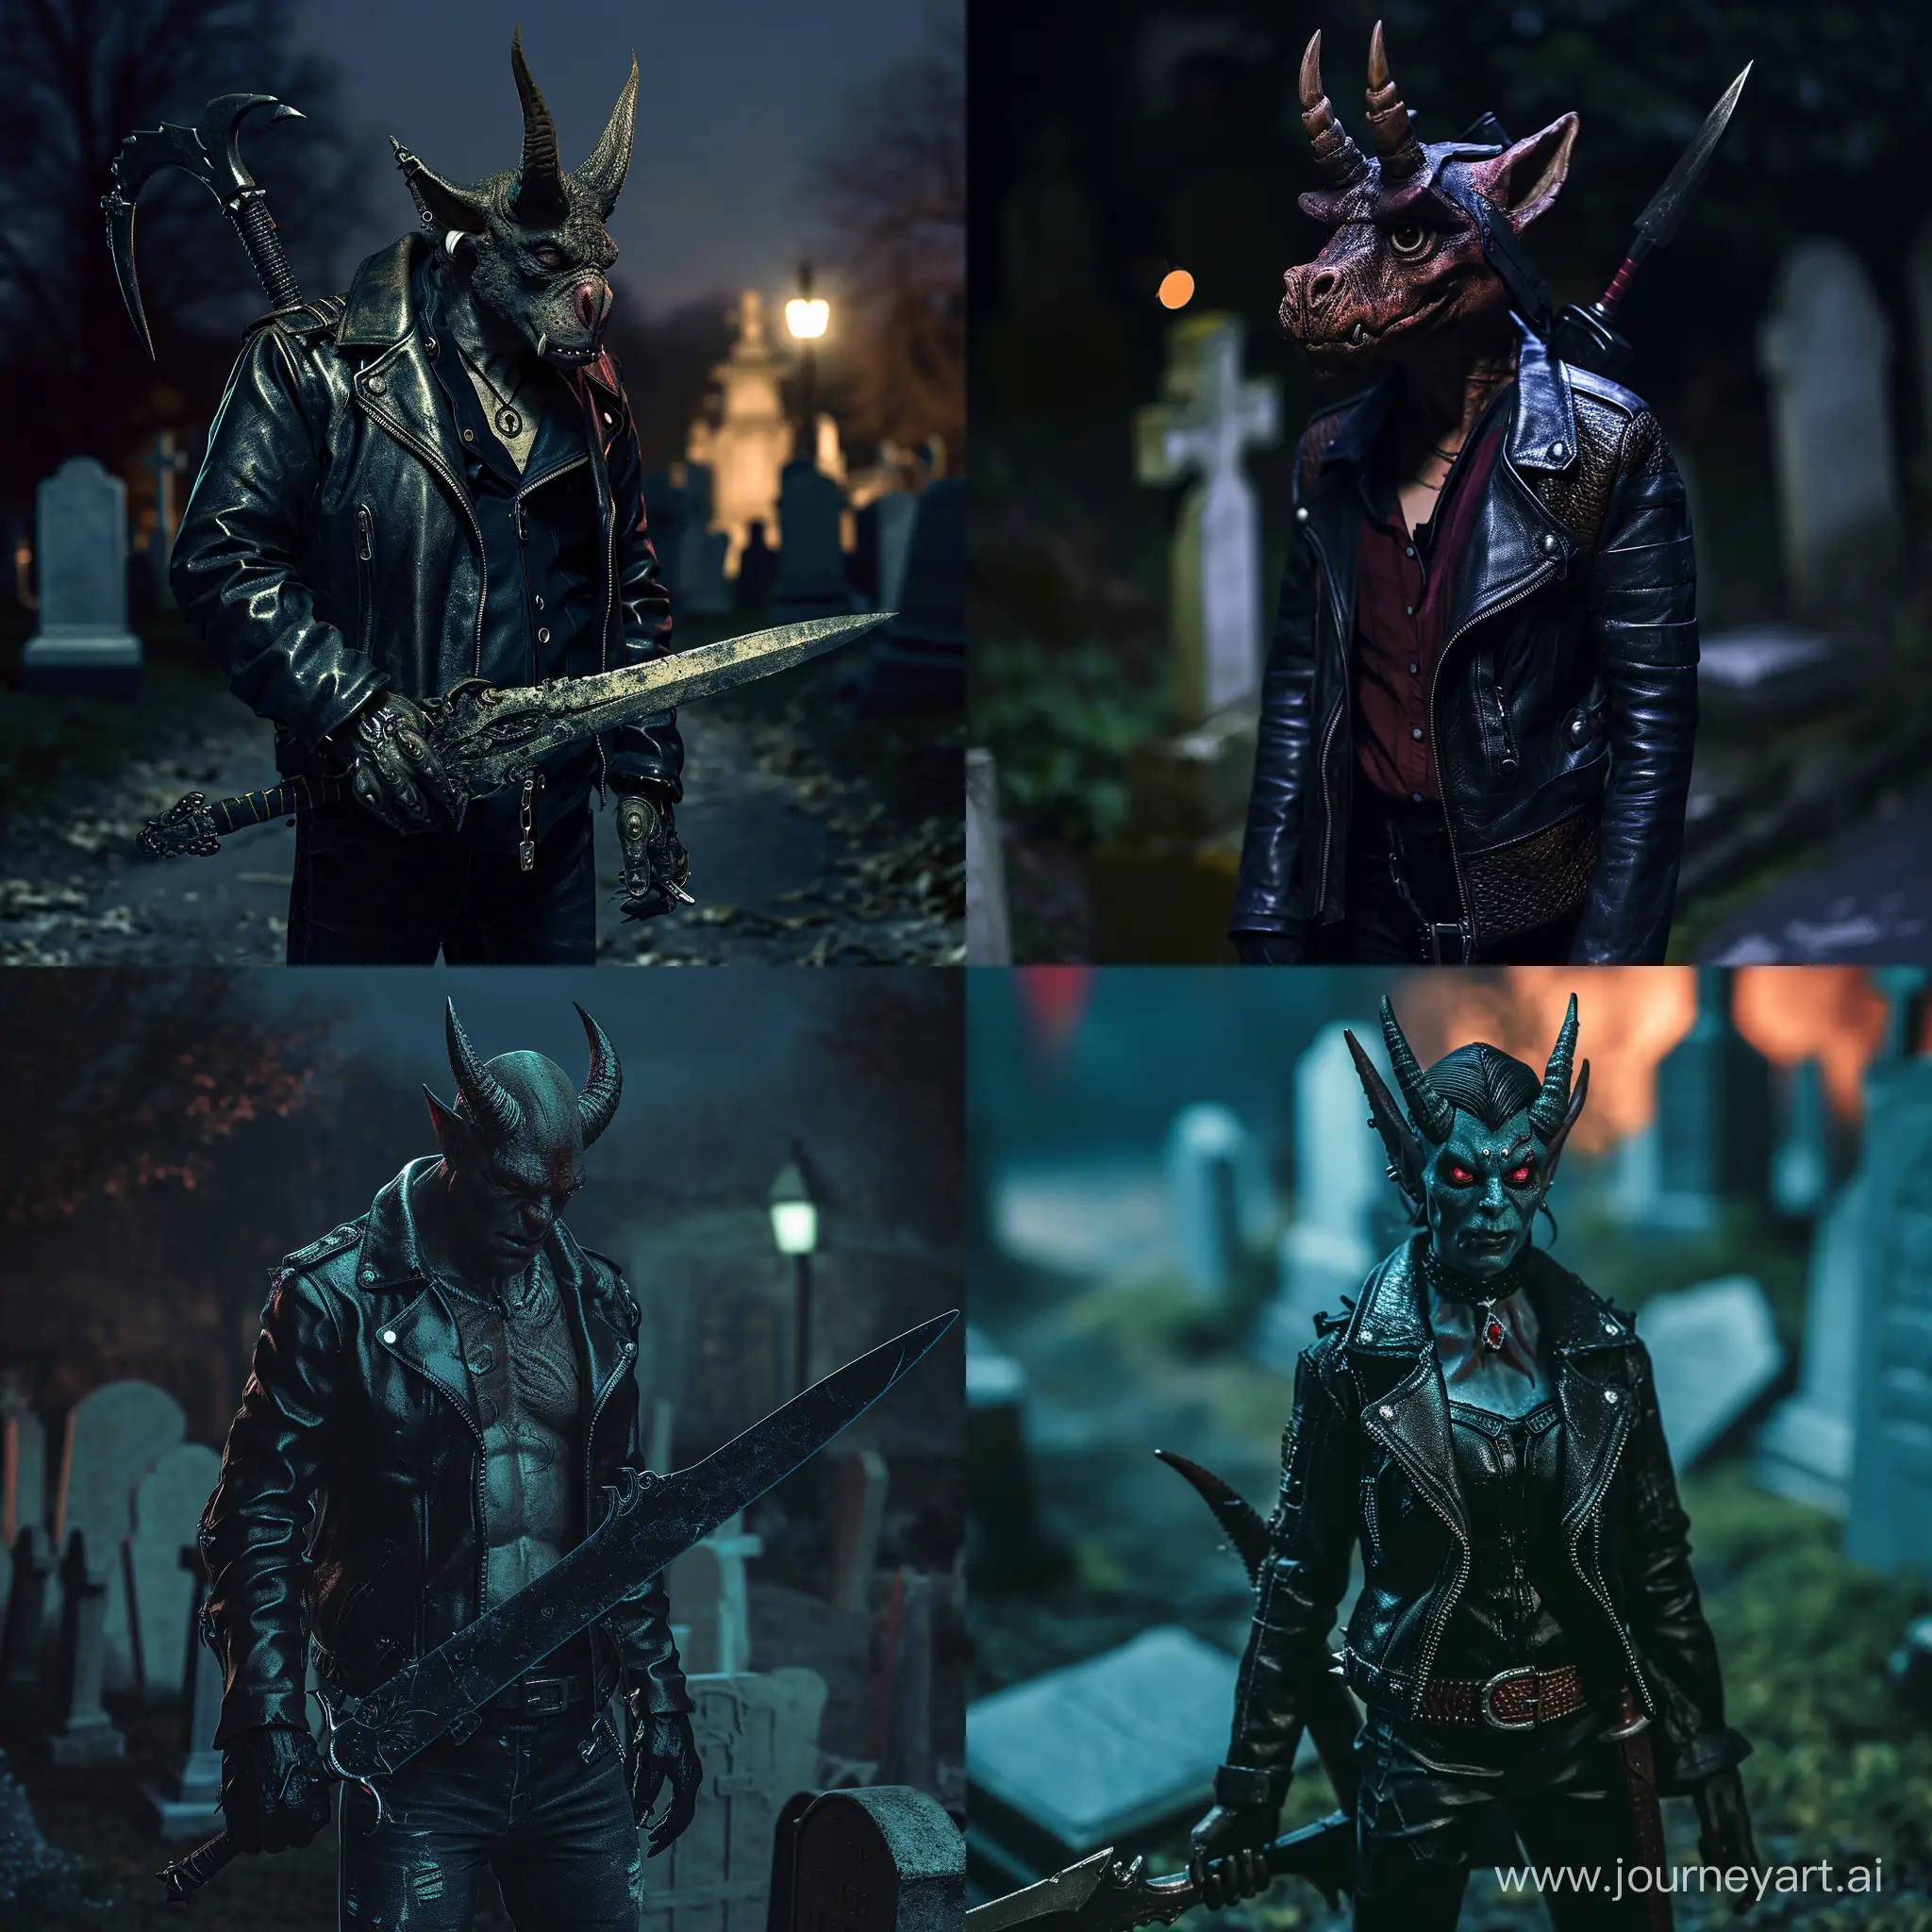 брутальный тифлинг с кожаной курткой, рогами и рапирой стоит на кладбище ночью